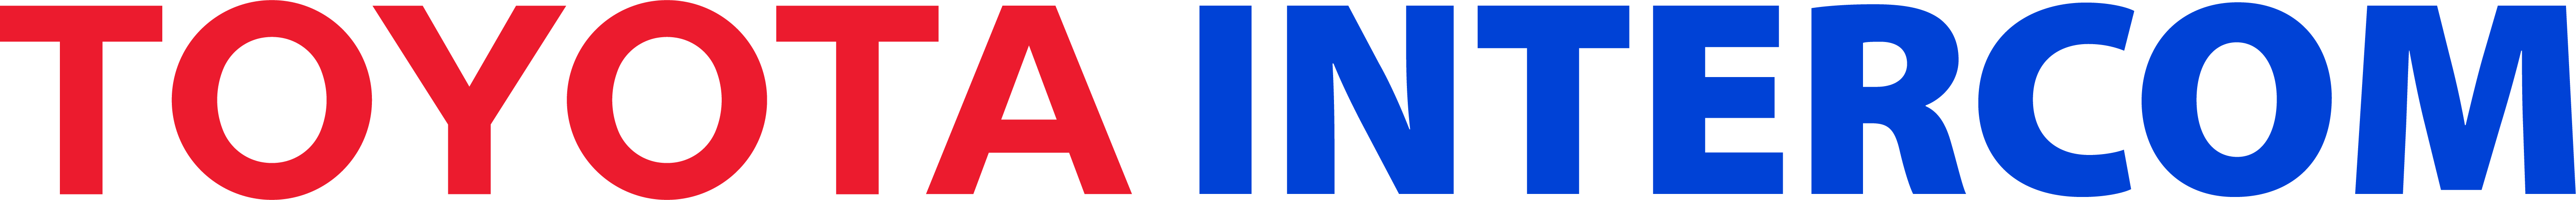 Logo Intercom